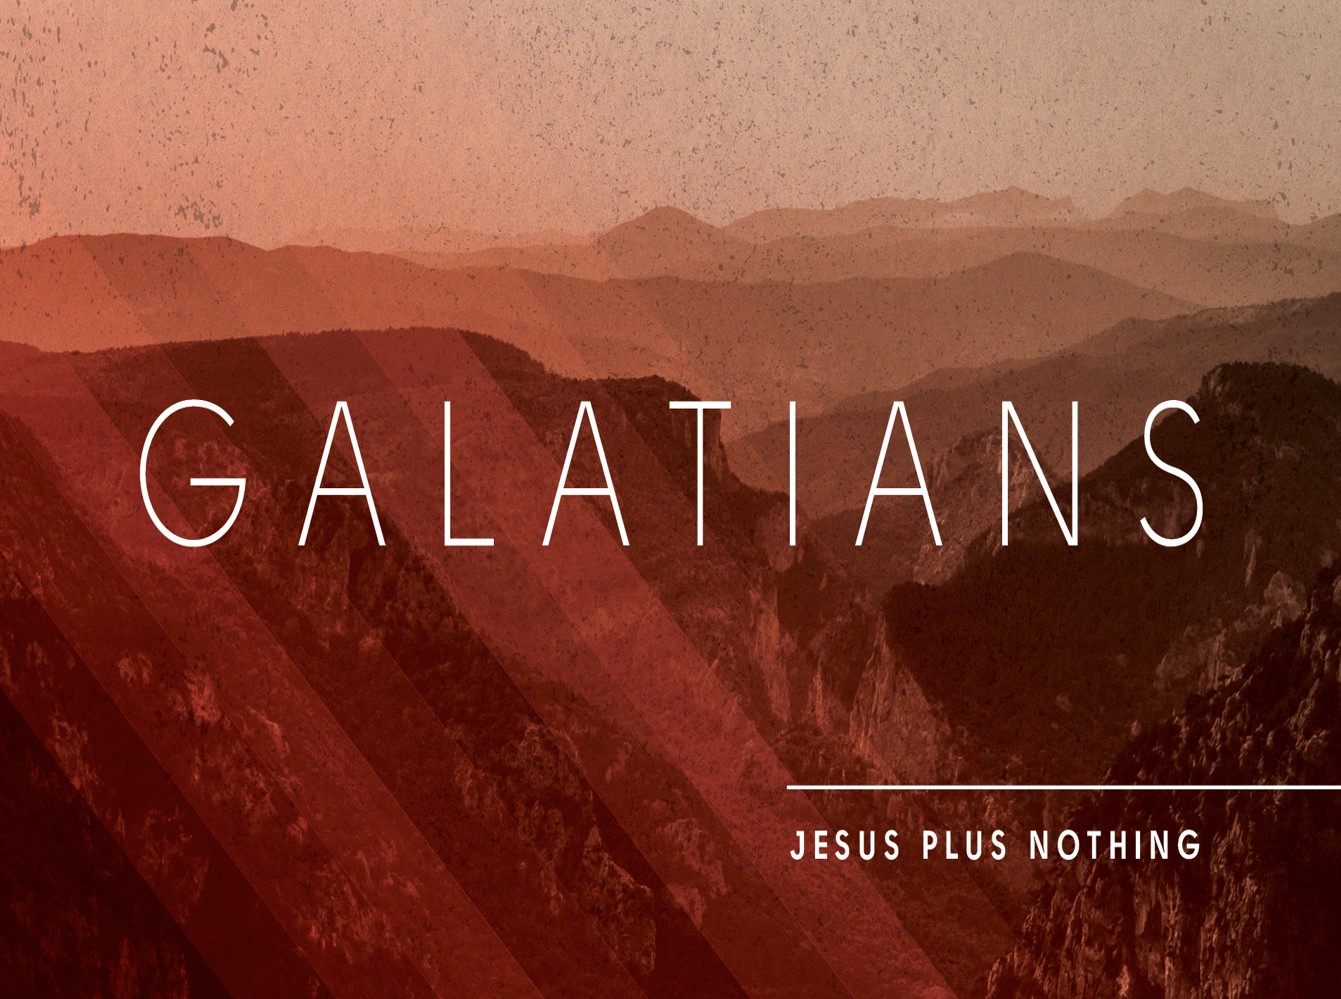 Galatians 3:1-5